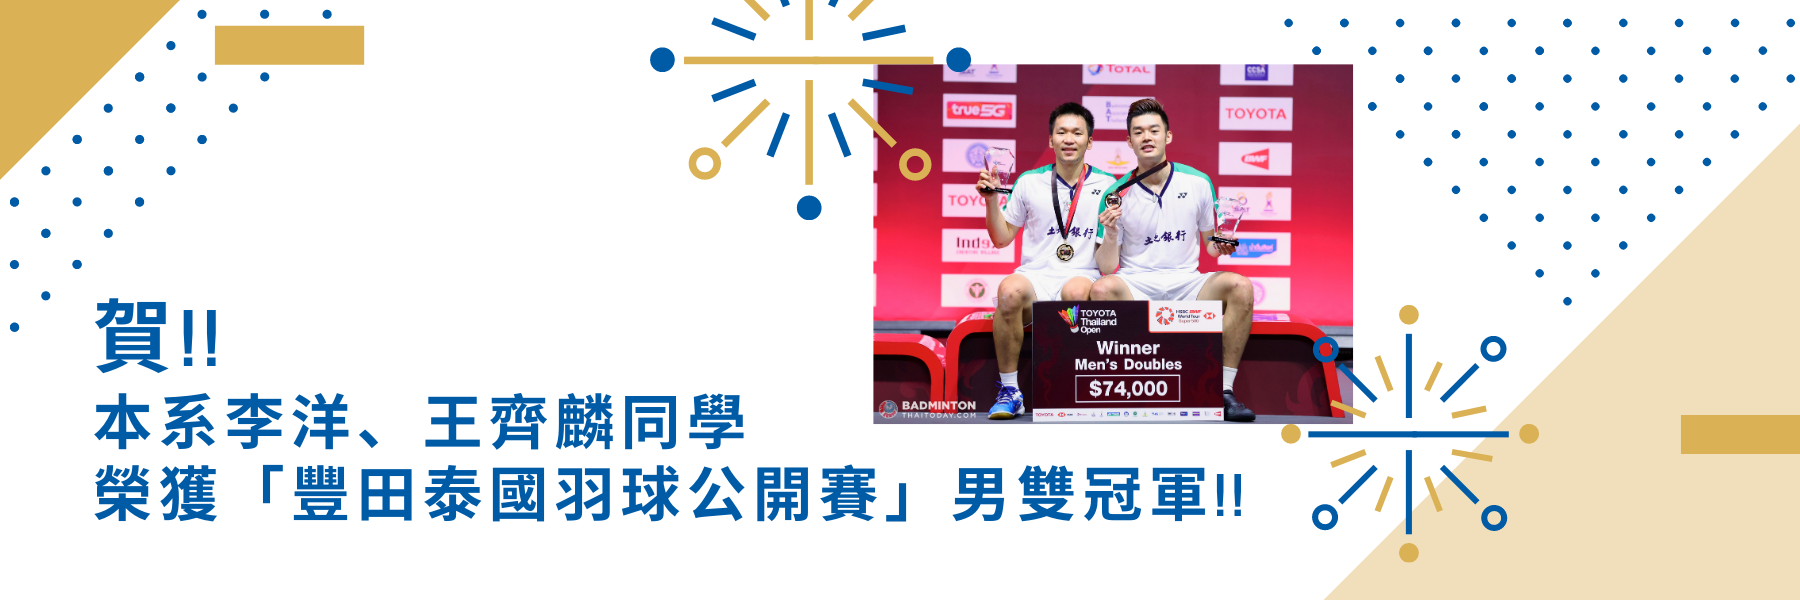 本系李洋、王齊麟同學榮獲豐田泰國羽球公開賽 男雙冠軍